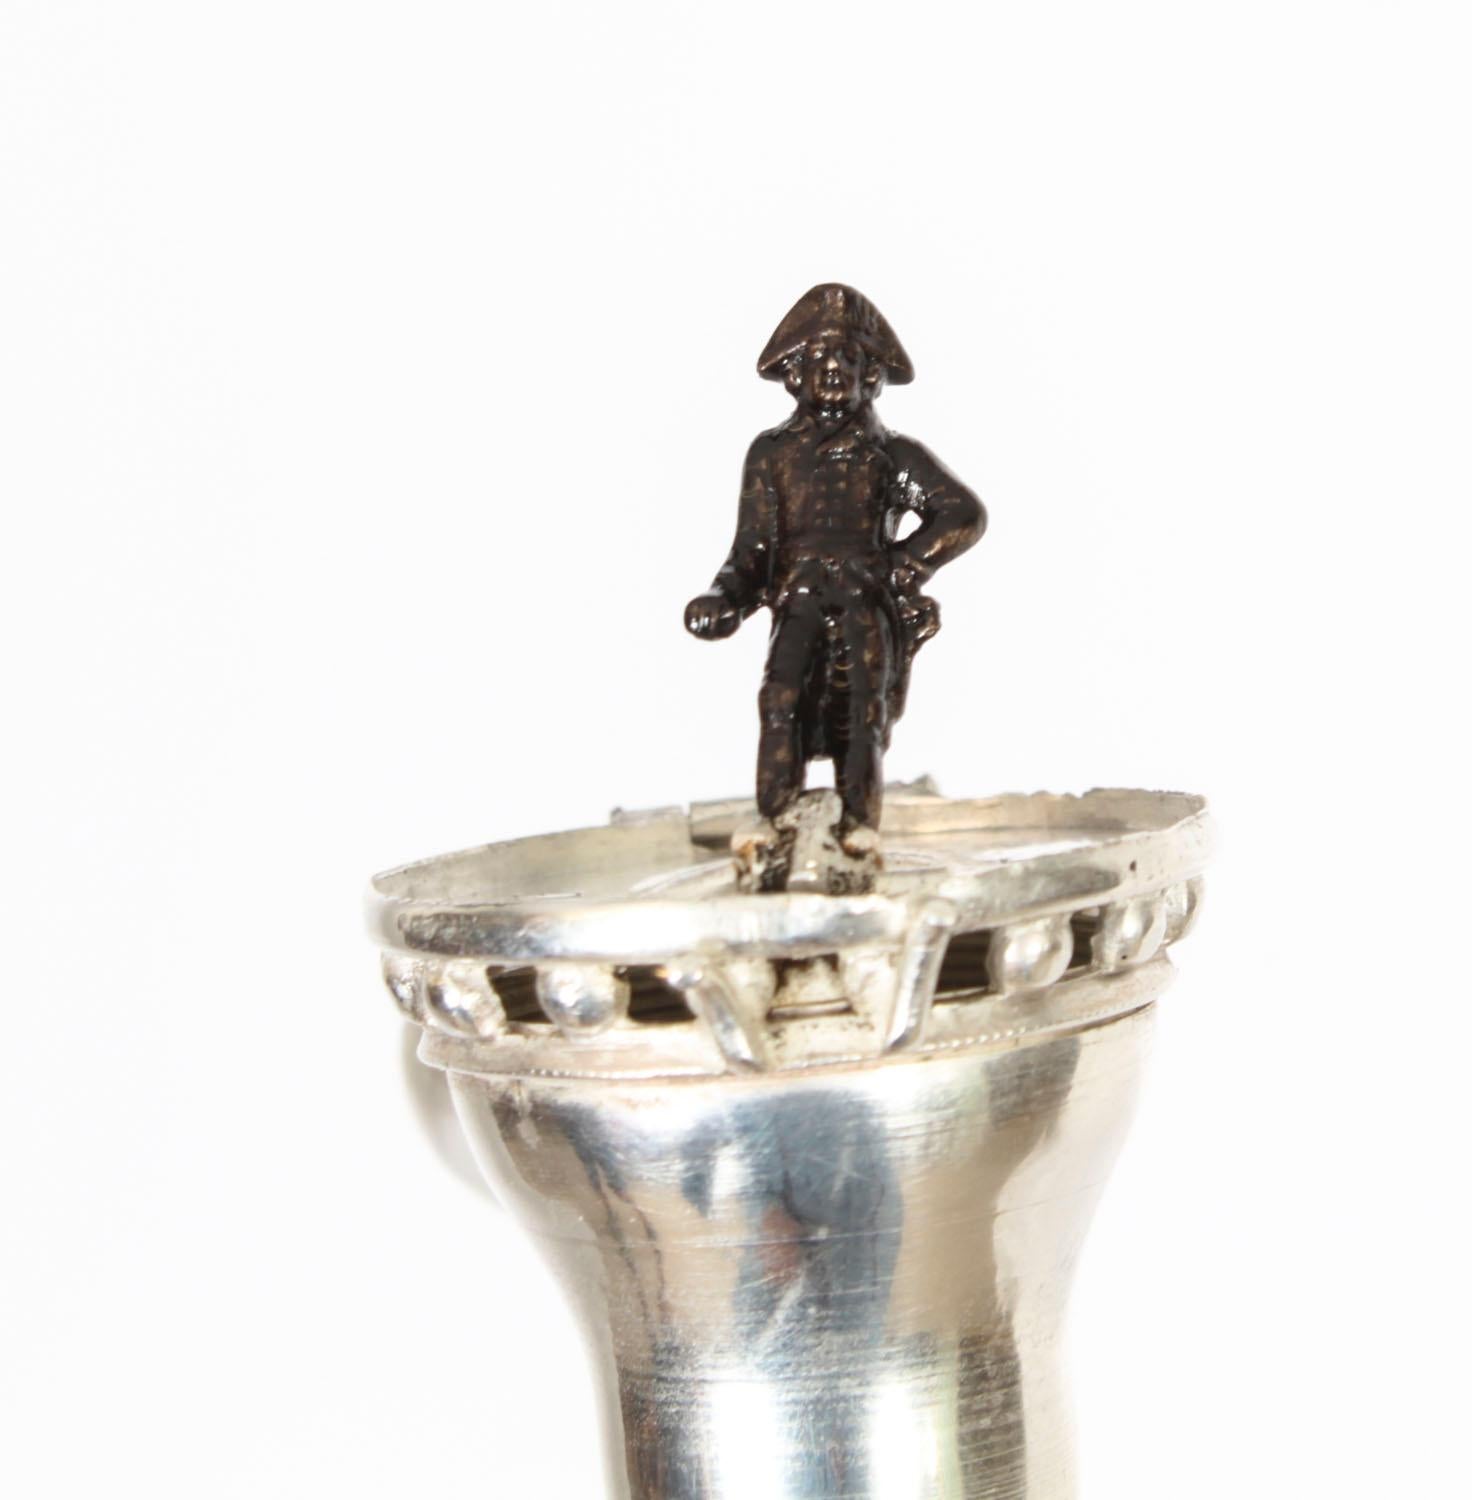 Il s'agit d'une magnifique canne ancienne de gentleman Napoléon Bonaparte à pommeau en métal argenté et ébonite, datant d'environ 1840.

Cette canne fantaisie reflète les guerres napoléoniennes et le culte de Napoléon Bonaparte. Le pommeau présente